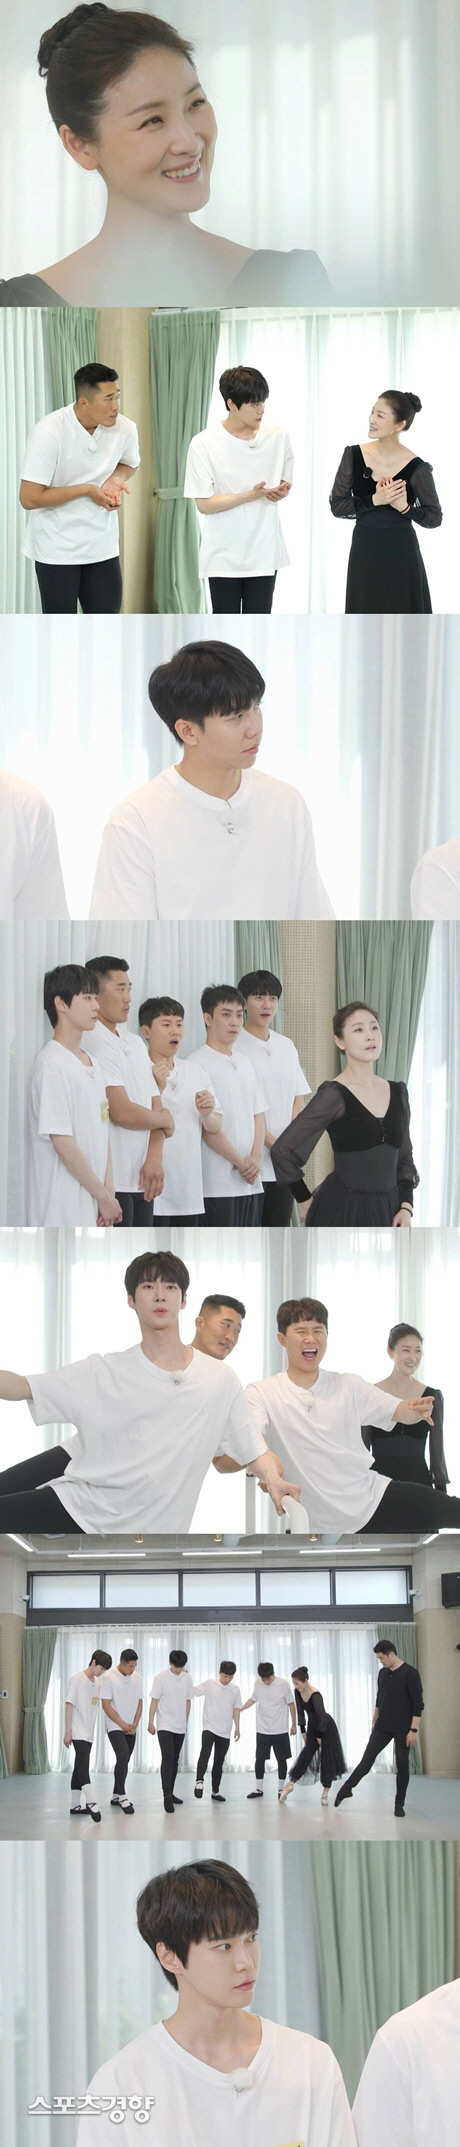 SBS 예능 ‘집사부일체’ 발레리나 김주원편 주요장면. 사진 SBS